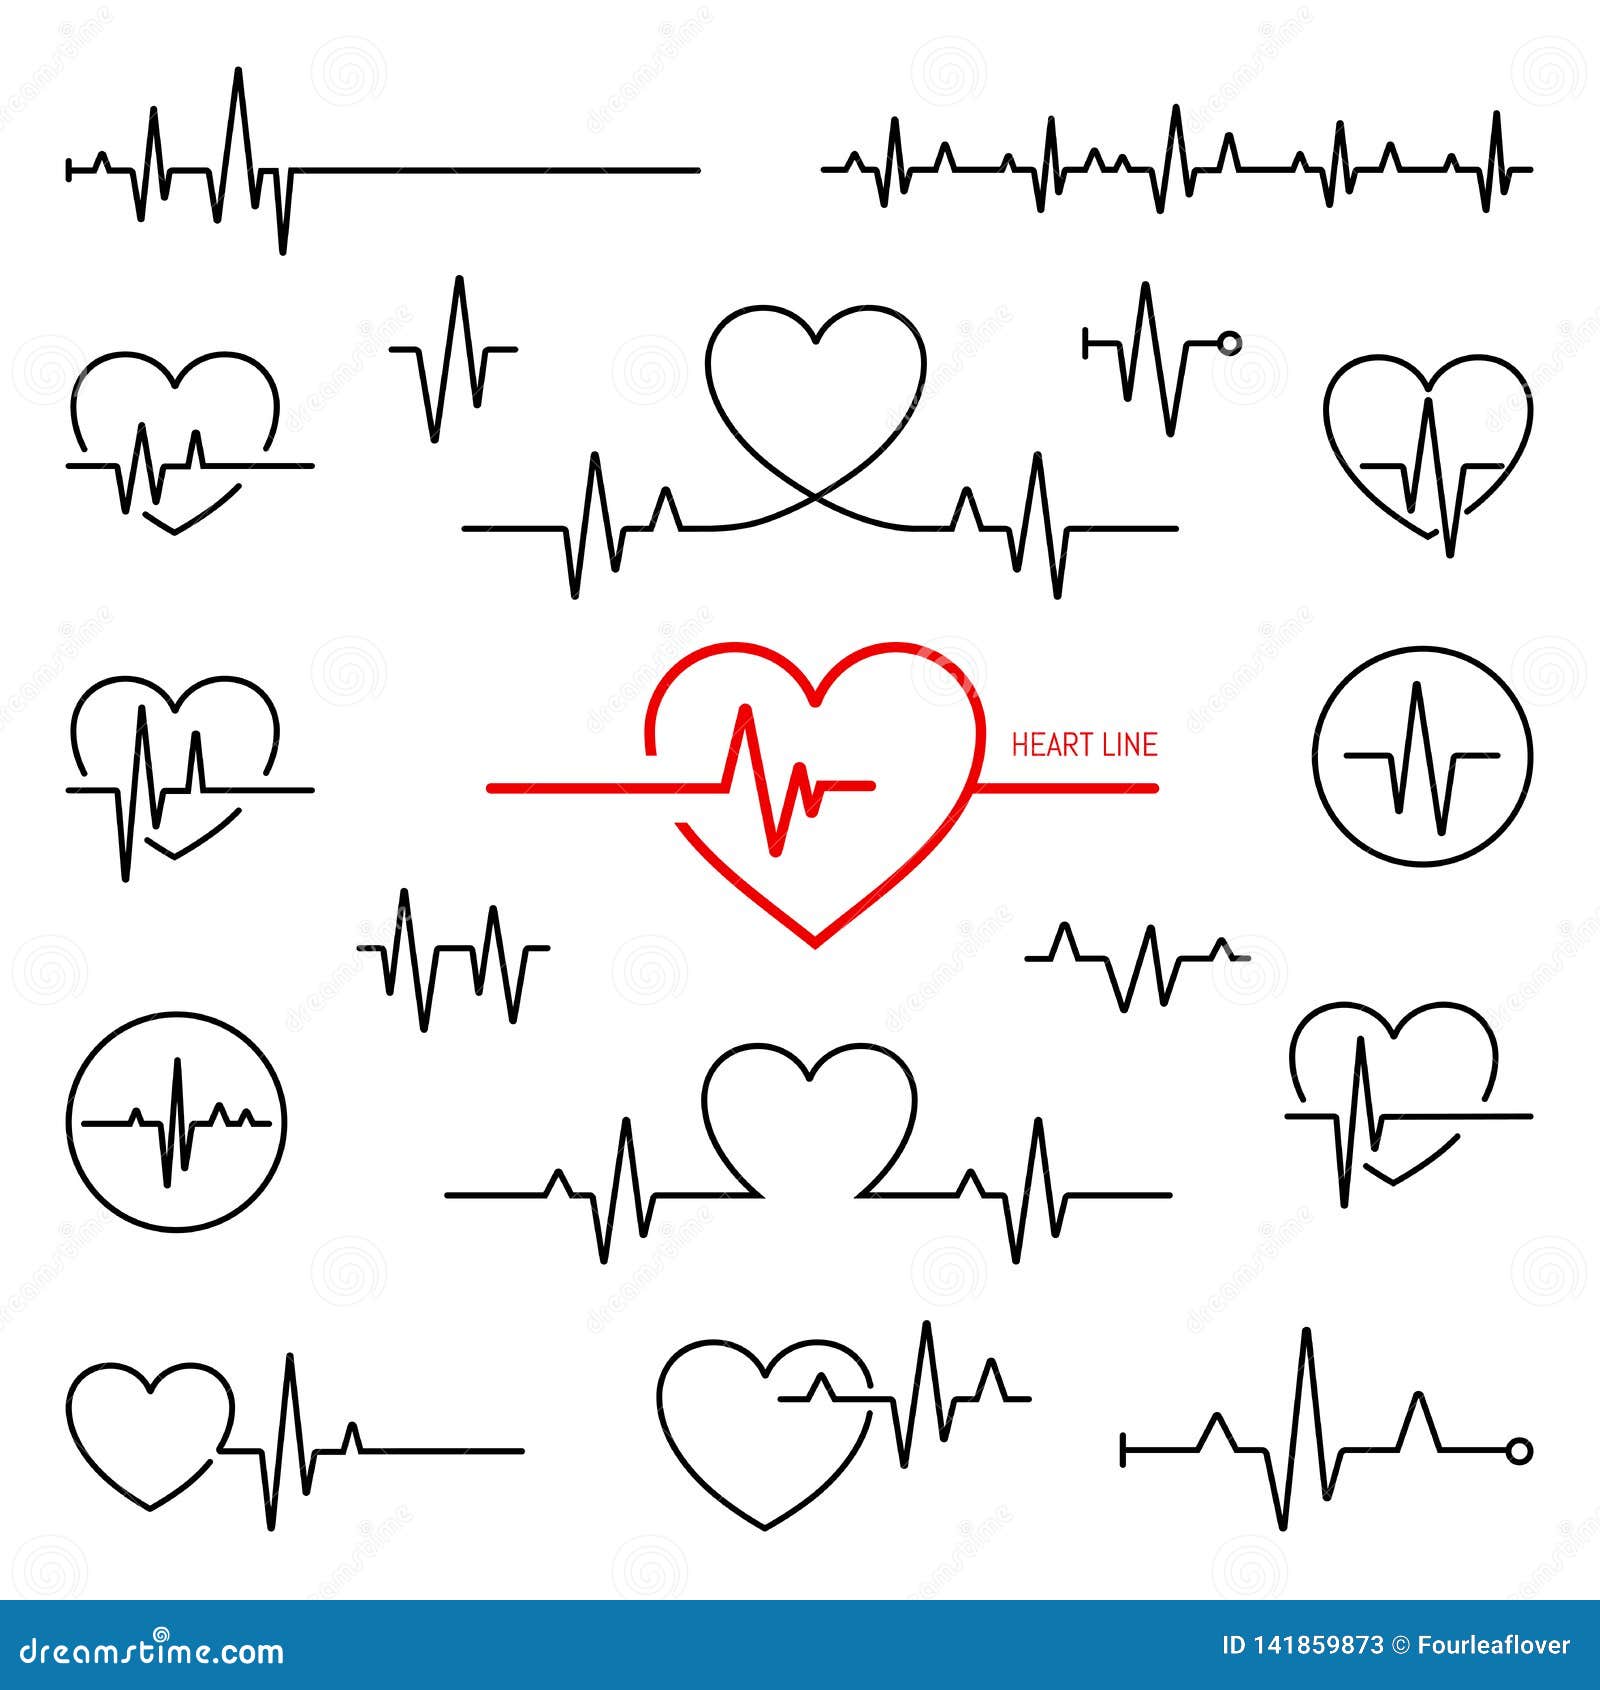 heart rhythm set, electrocardiogram, ecg - ekg signal